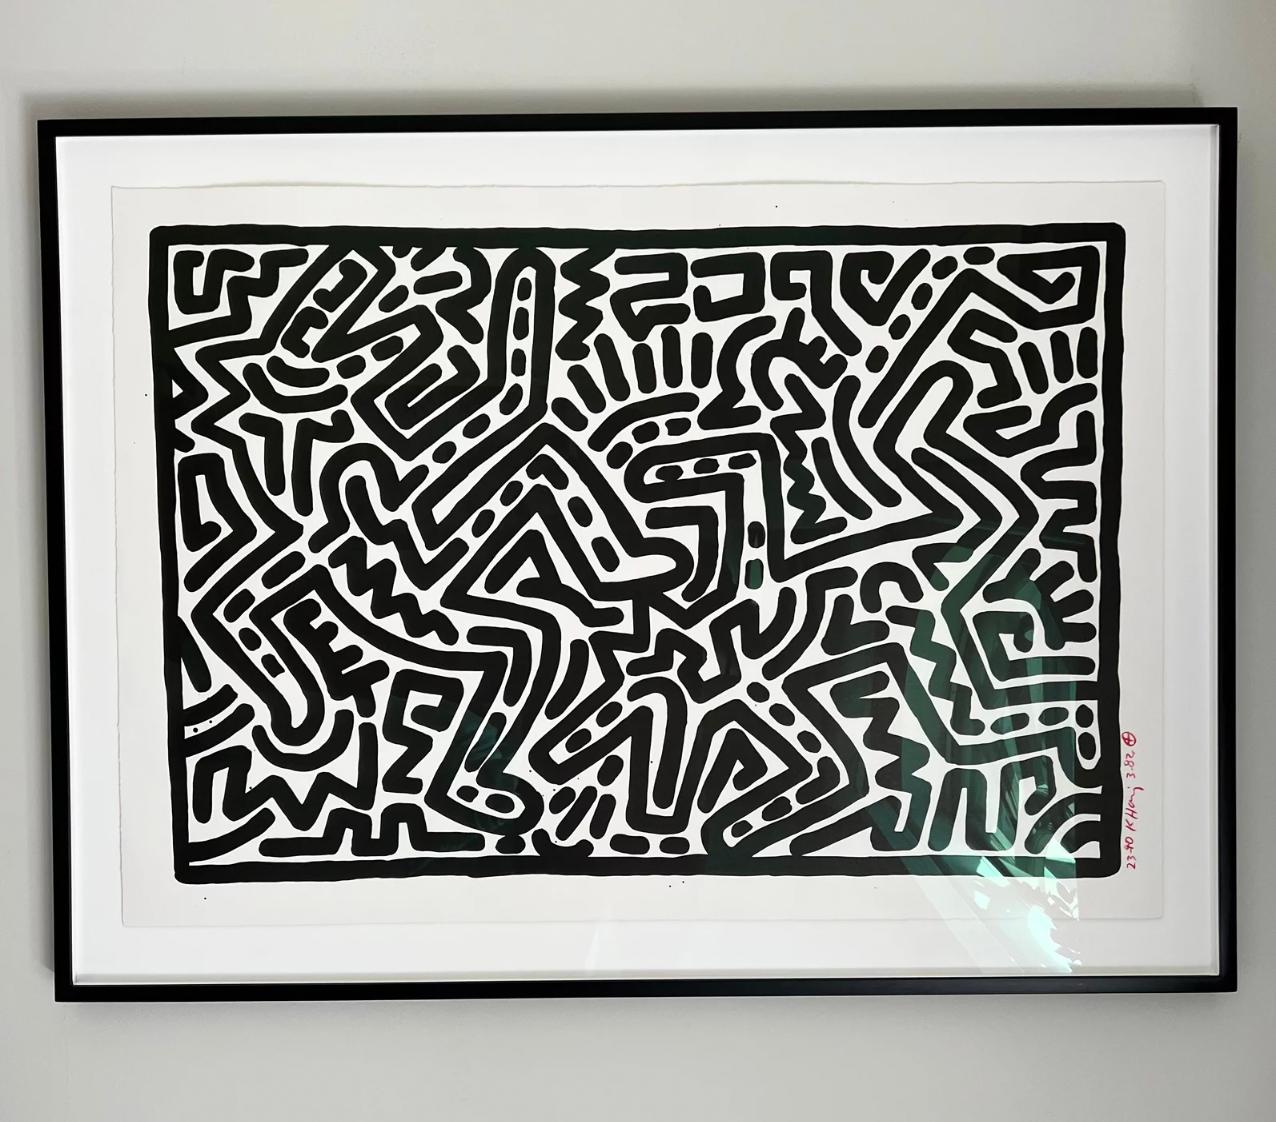 Künstler: Keith Haring 
Titel: Unbetitelt (Tafel 1)
Größe:  24 x 36 in. (61 x 91.4 cm)
Medium: Lithographie auf Arches-Papier
Auflage: 23 von 40
Jahr: 1982
Anmerkungen: Aus einer Folge von sechs Drucken. Signiert, datiert und nummeriert am rechten